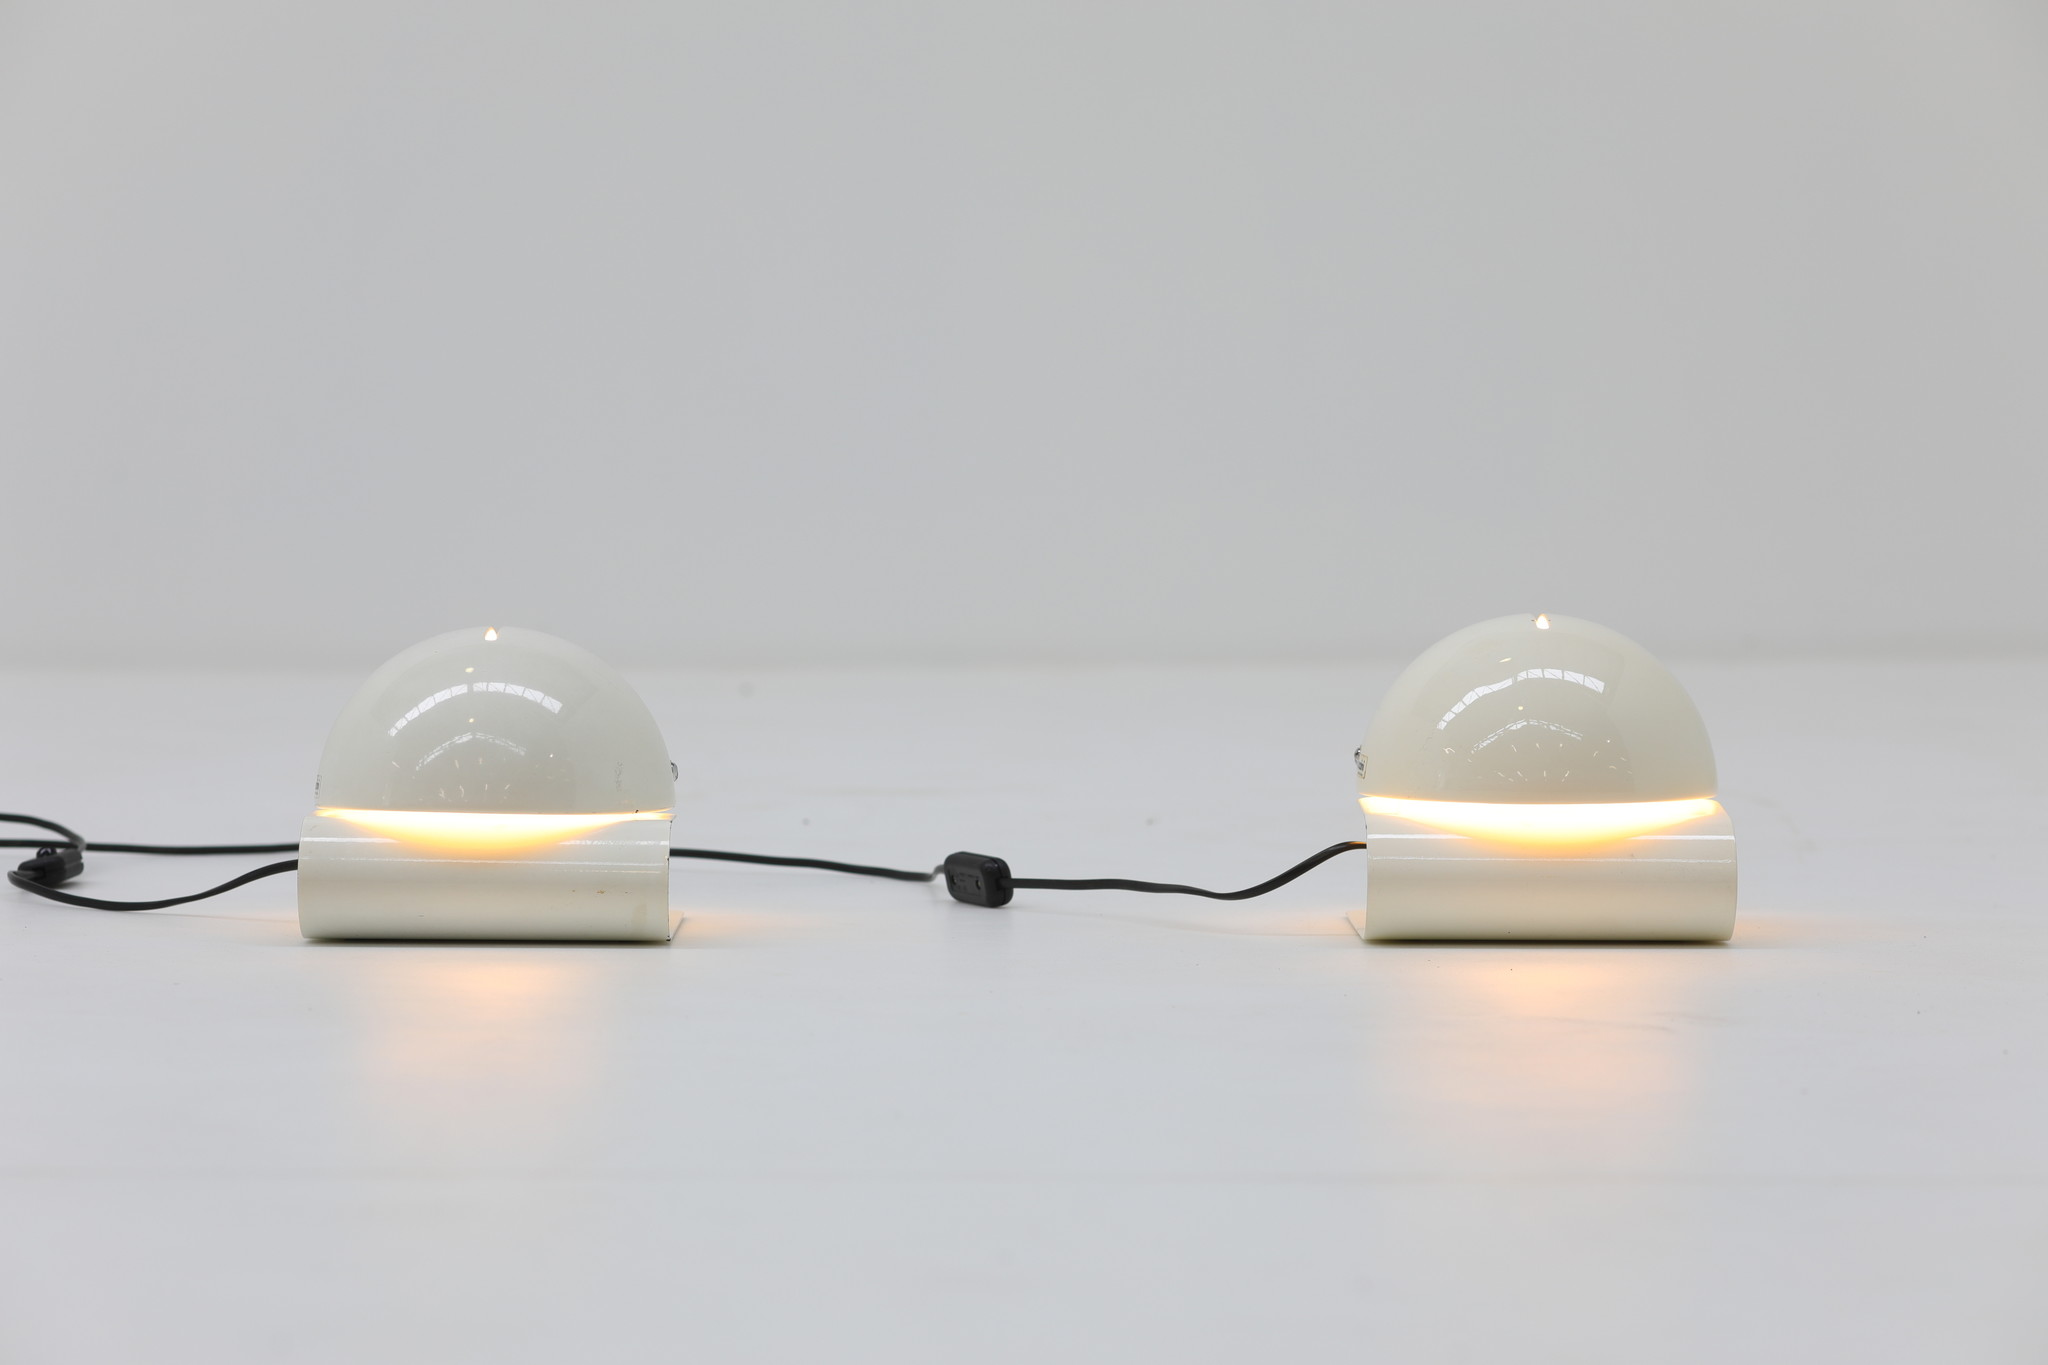 Lampes de table "LIE" conçues par Giuseppe Cormio pour Guzzini, années 1970